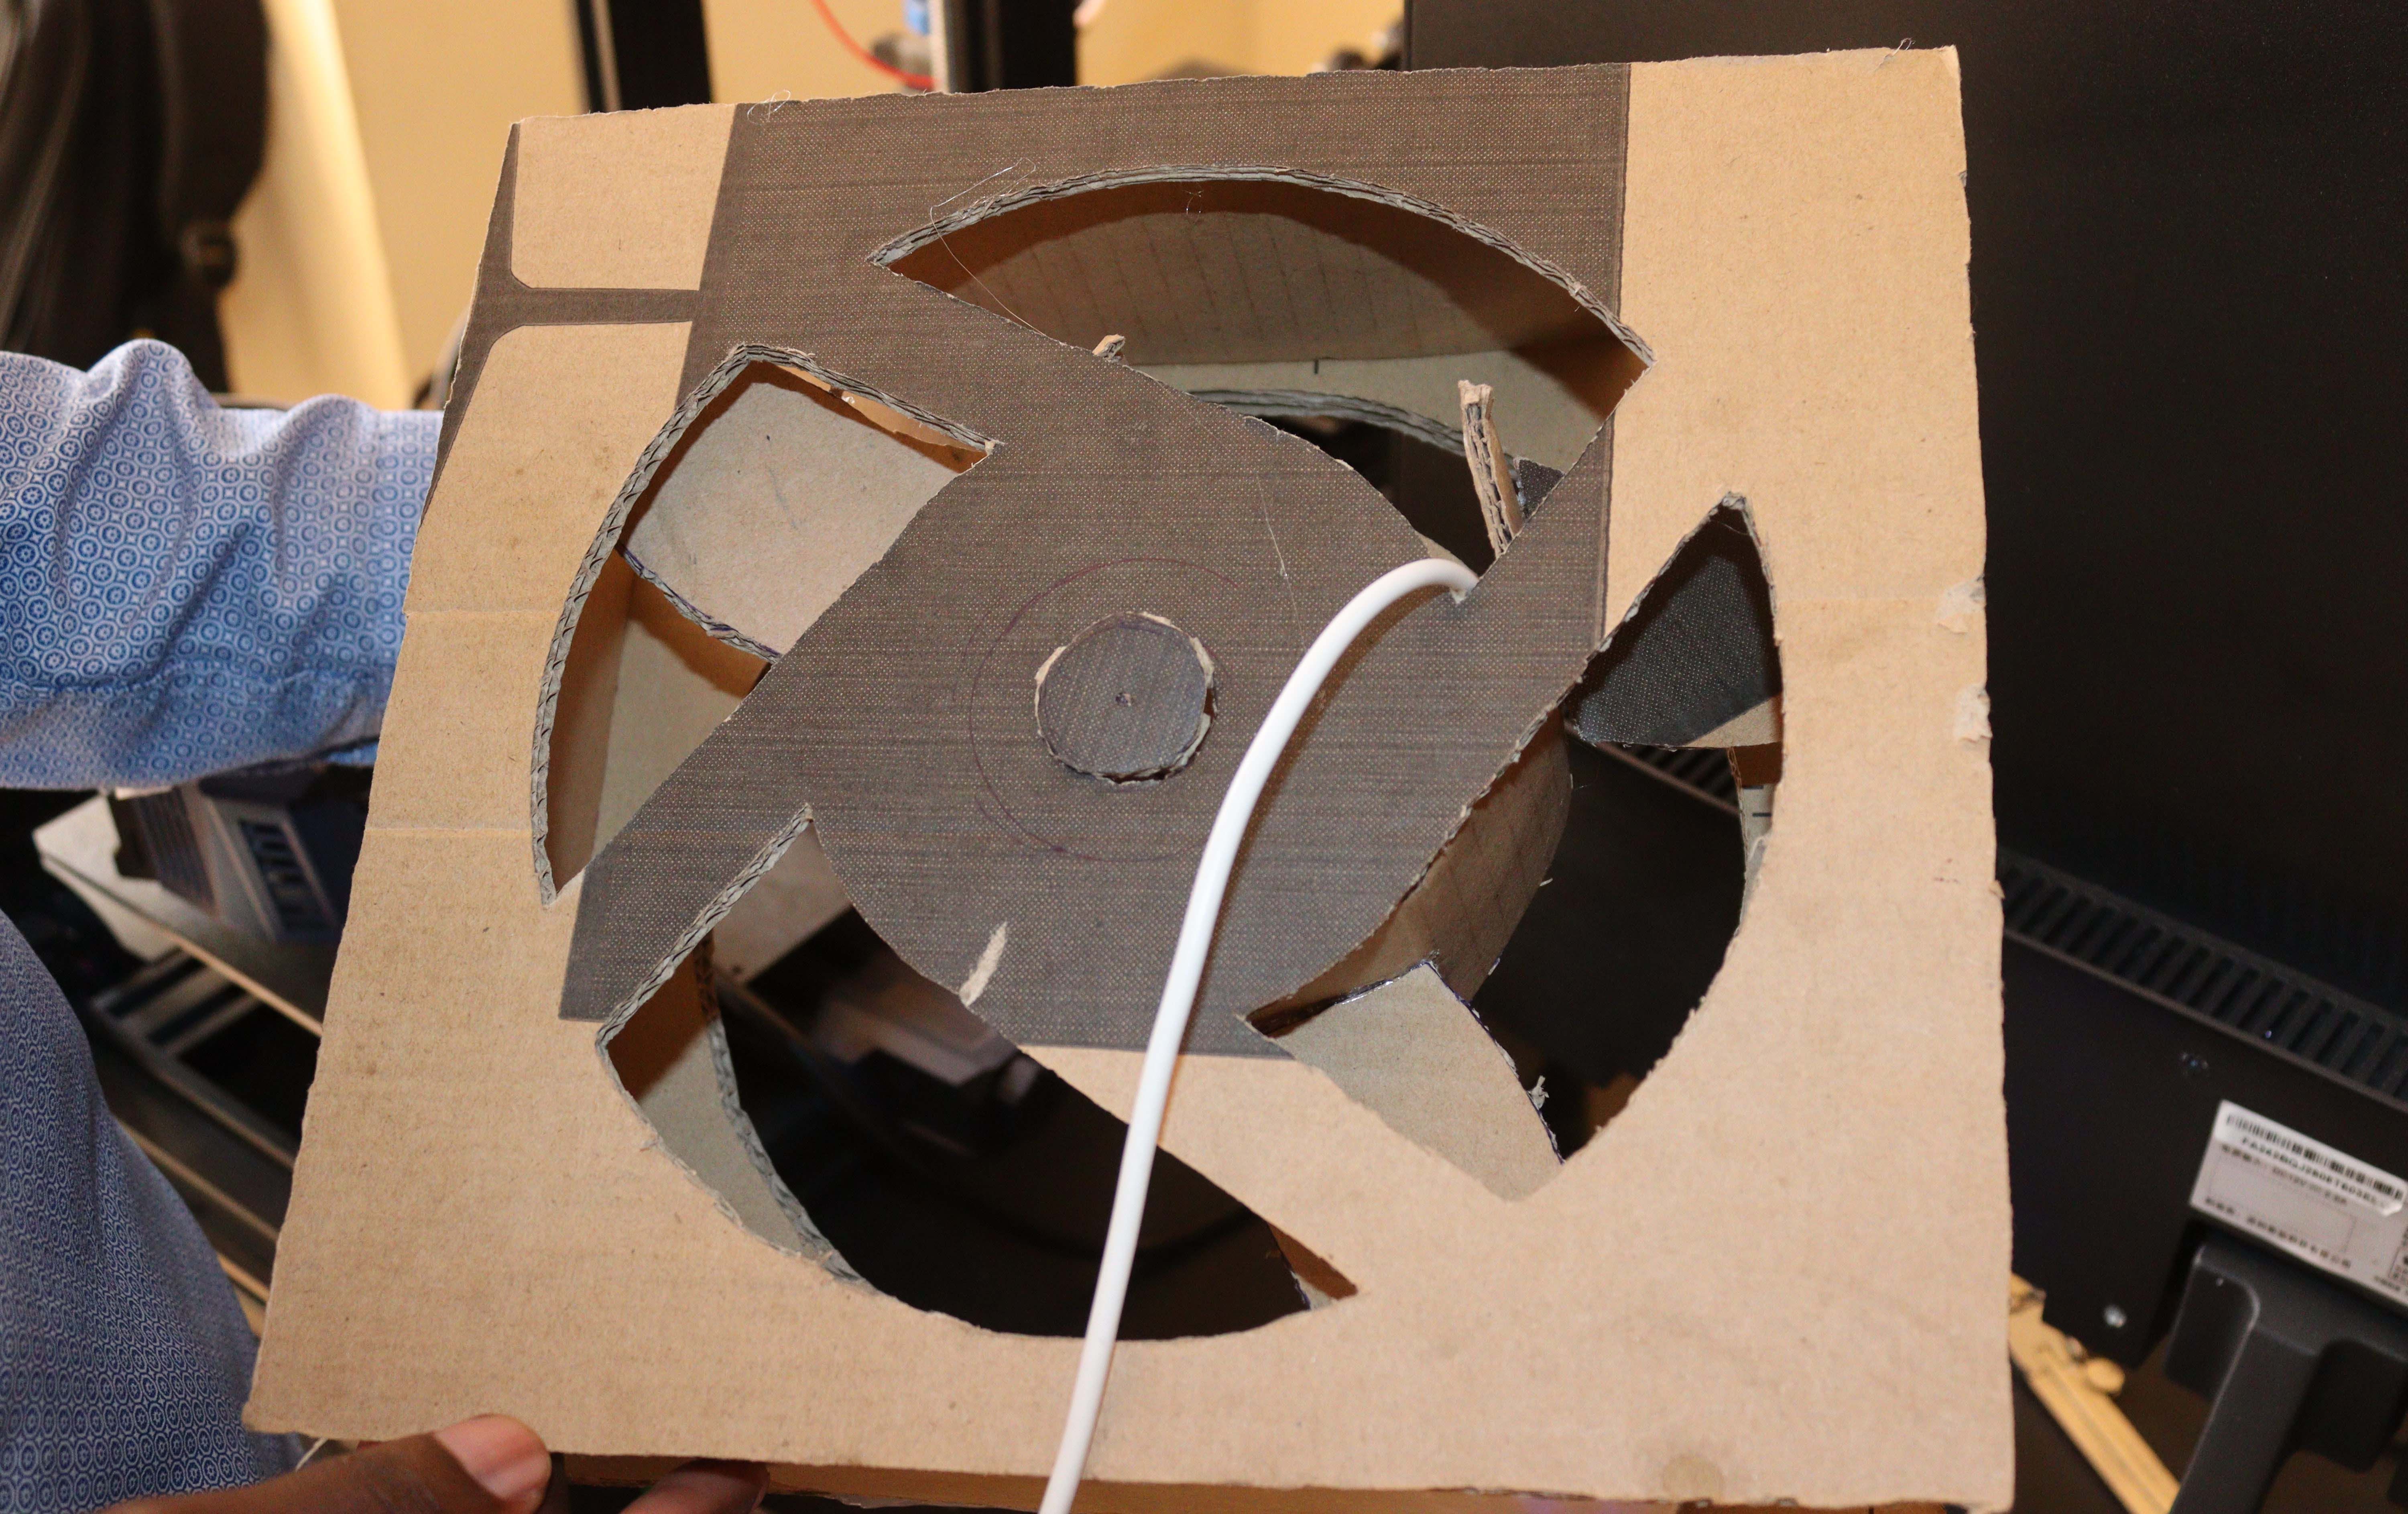 A desktop fan built using Cardboards